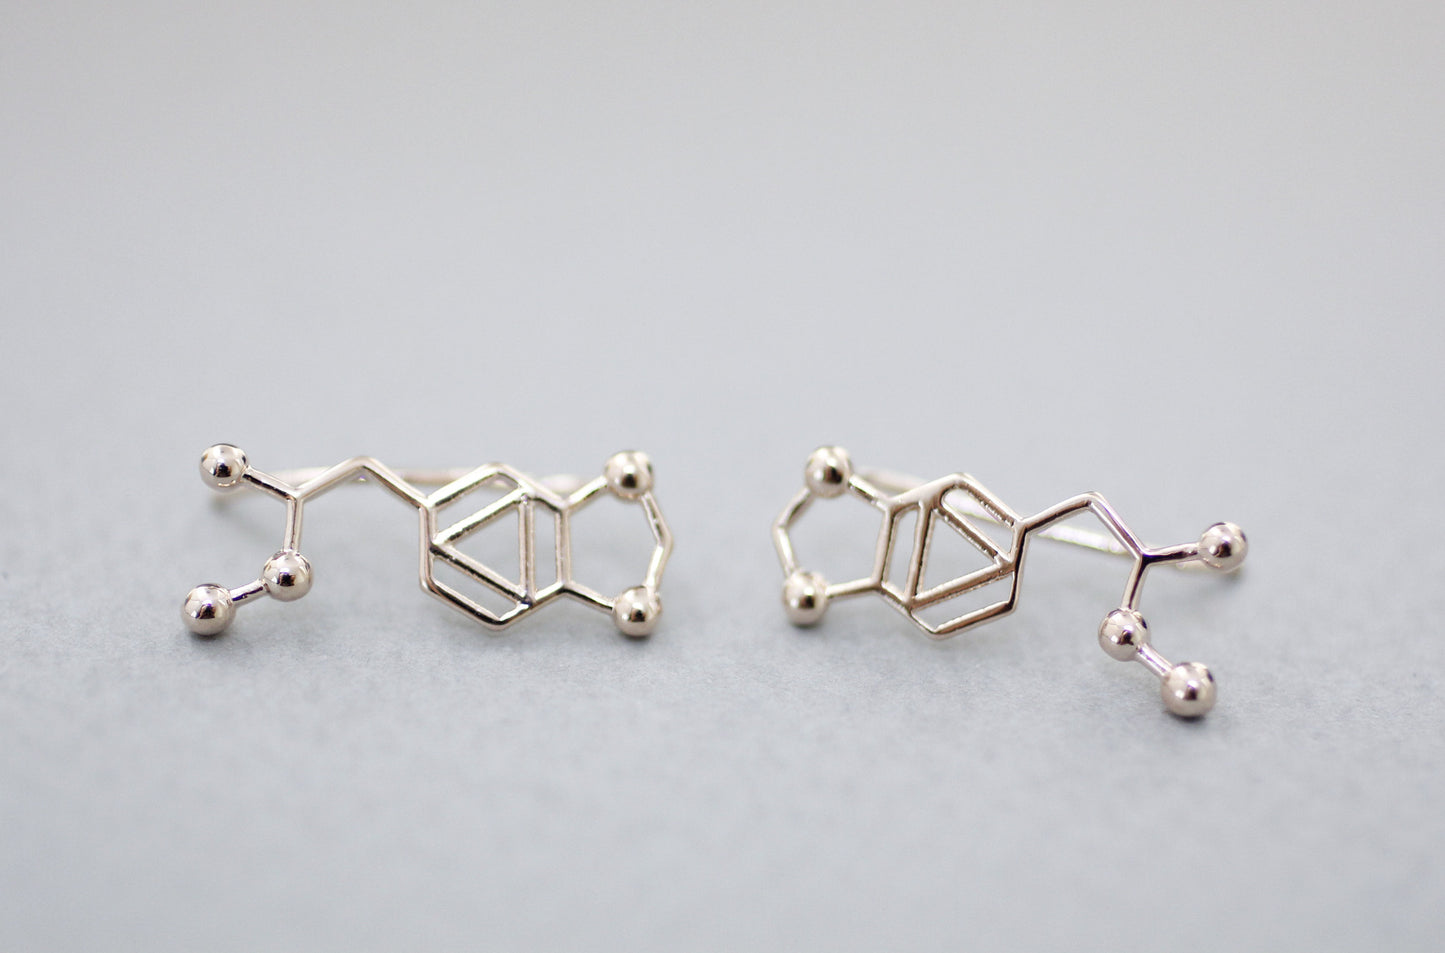 Ecstasy Molecule Ear climber earrings, MDMA Molecule Structure Ear Crawler earrings